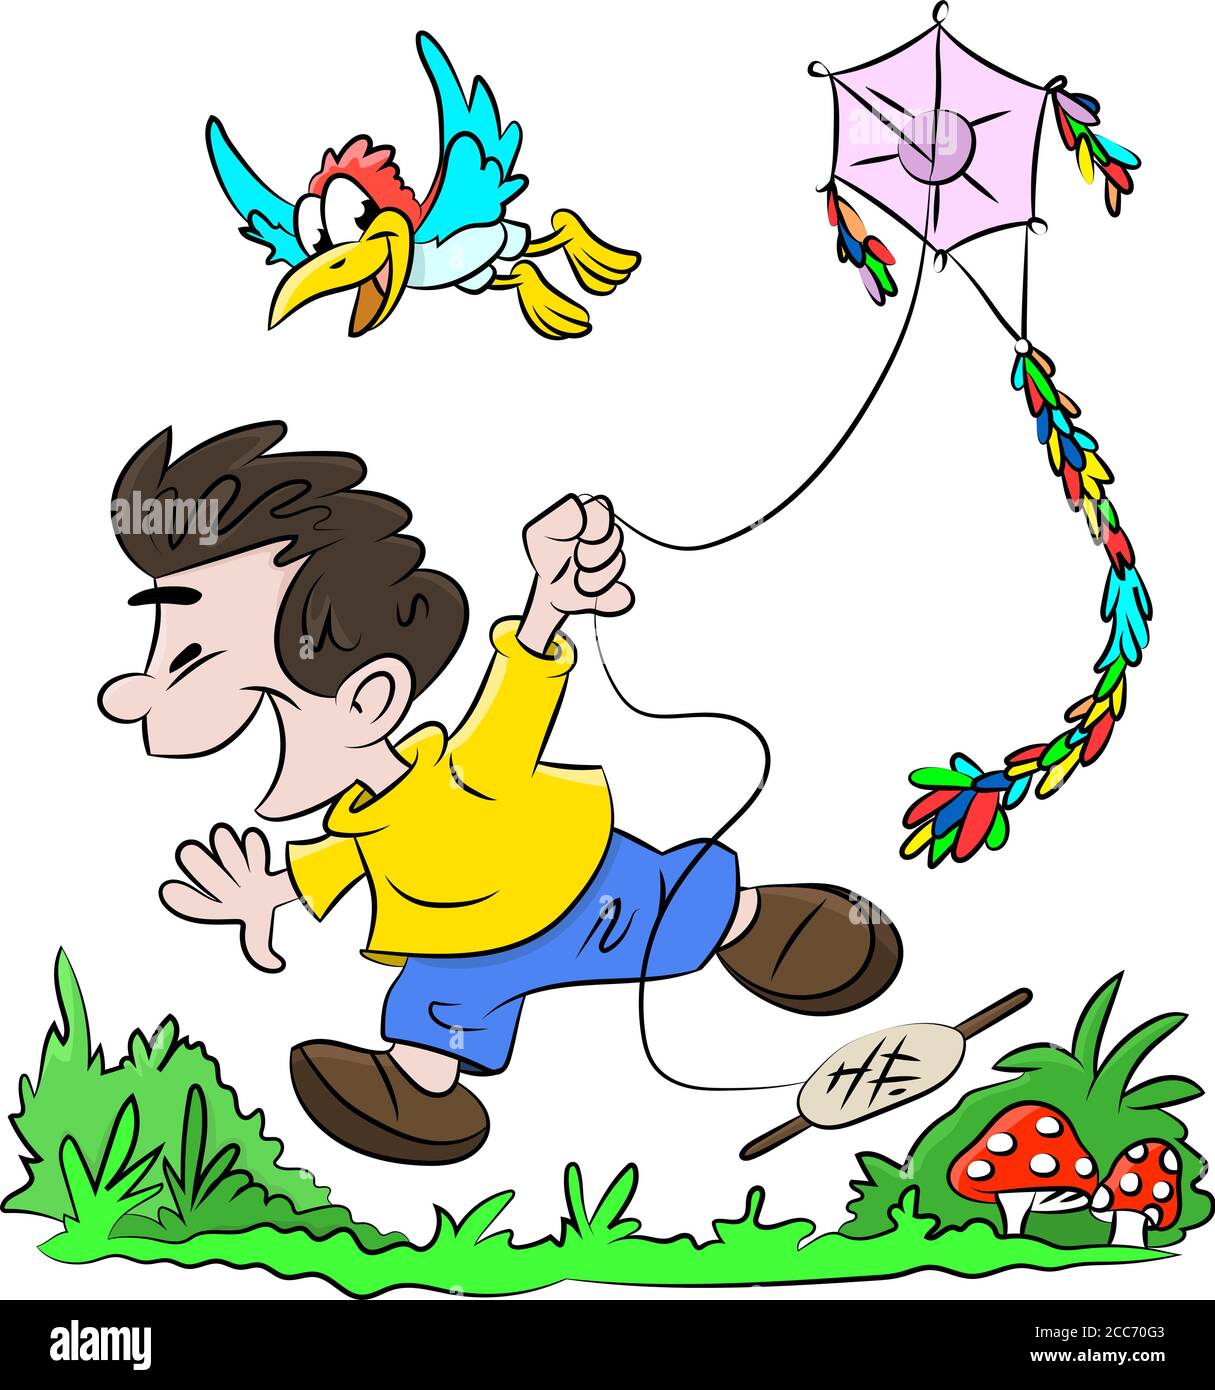 Dessin animé garçon courant heureusement et volant une illustration de vecteur cerf-volant Illustration de Vecteur